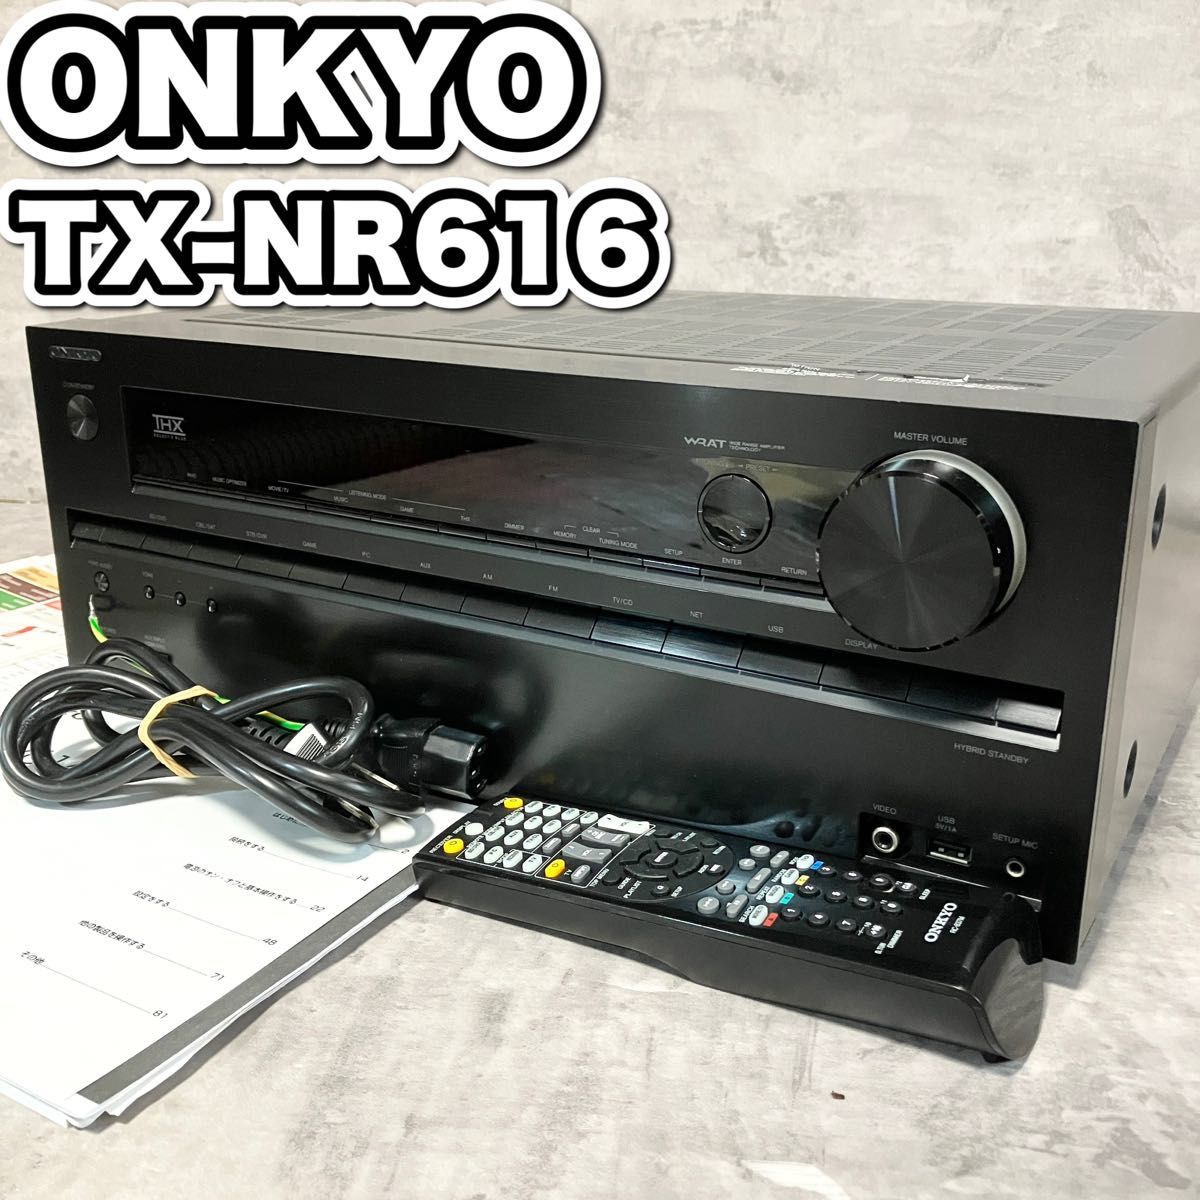 ONKYO 7.1ch対応AVレシーバー TX-NR616(B) - テレビ、映像機器